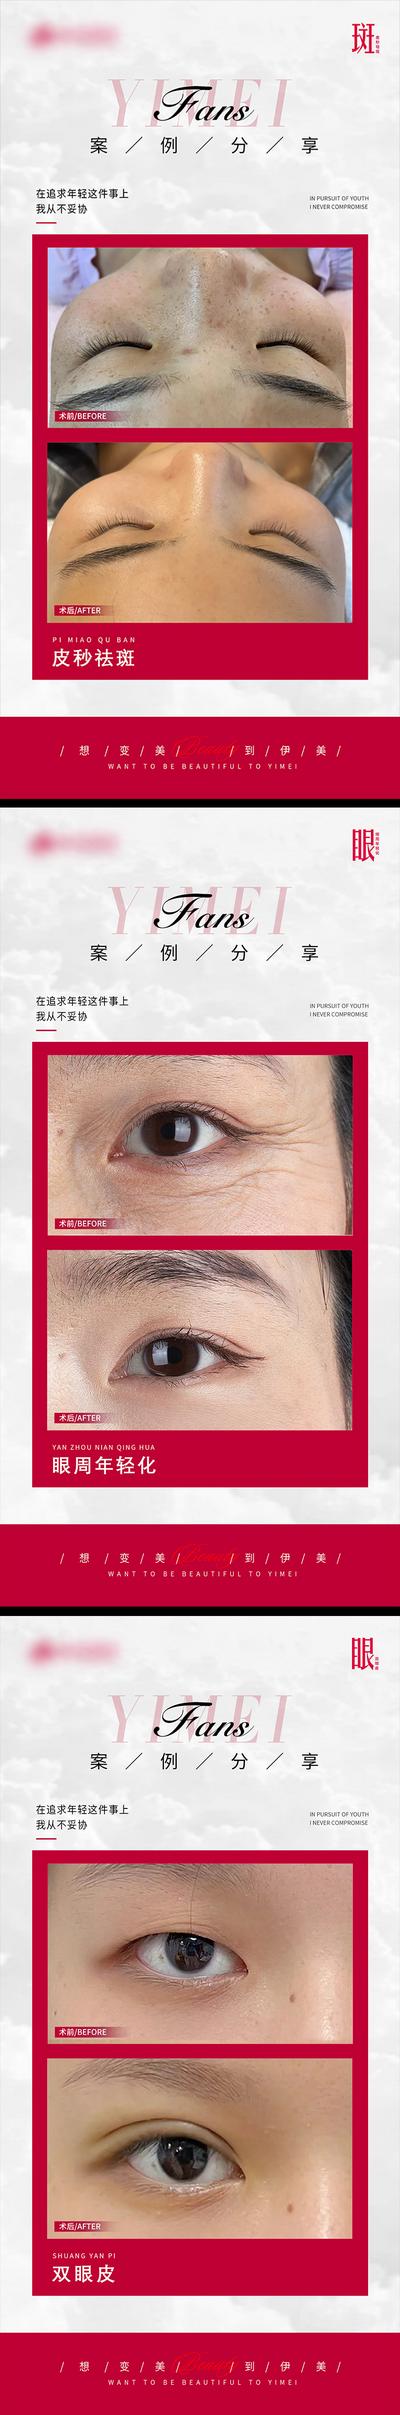 南门网 海报 医美 整形 皮秒祛斑 眼周年轻化 双眼皮 案例 对比